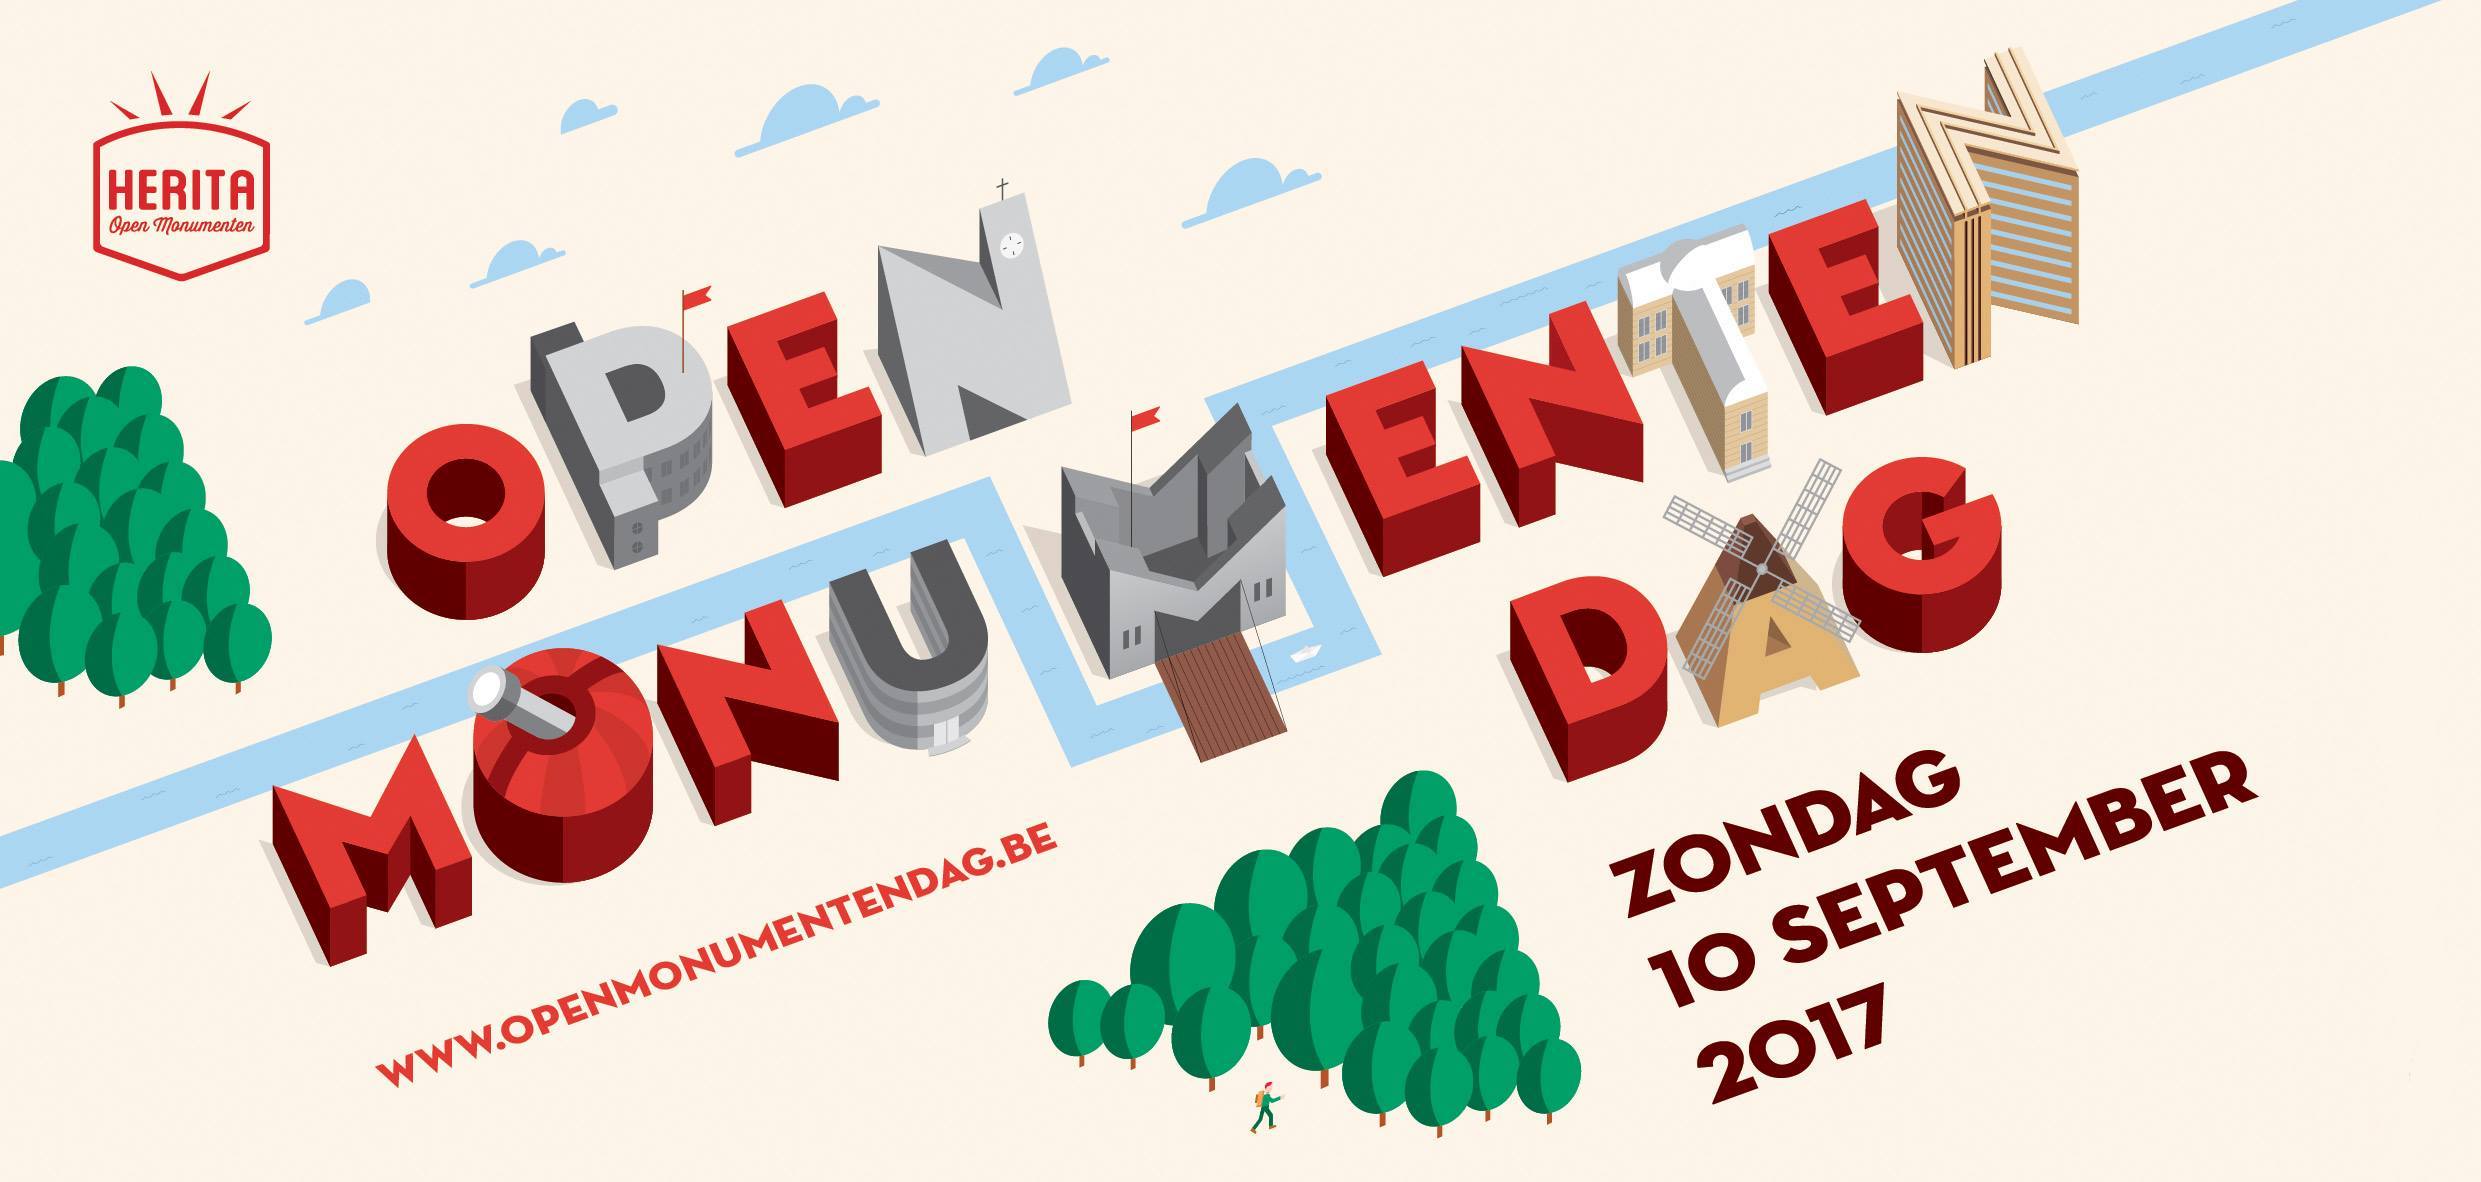 09 08 Open Monumentendag 2017